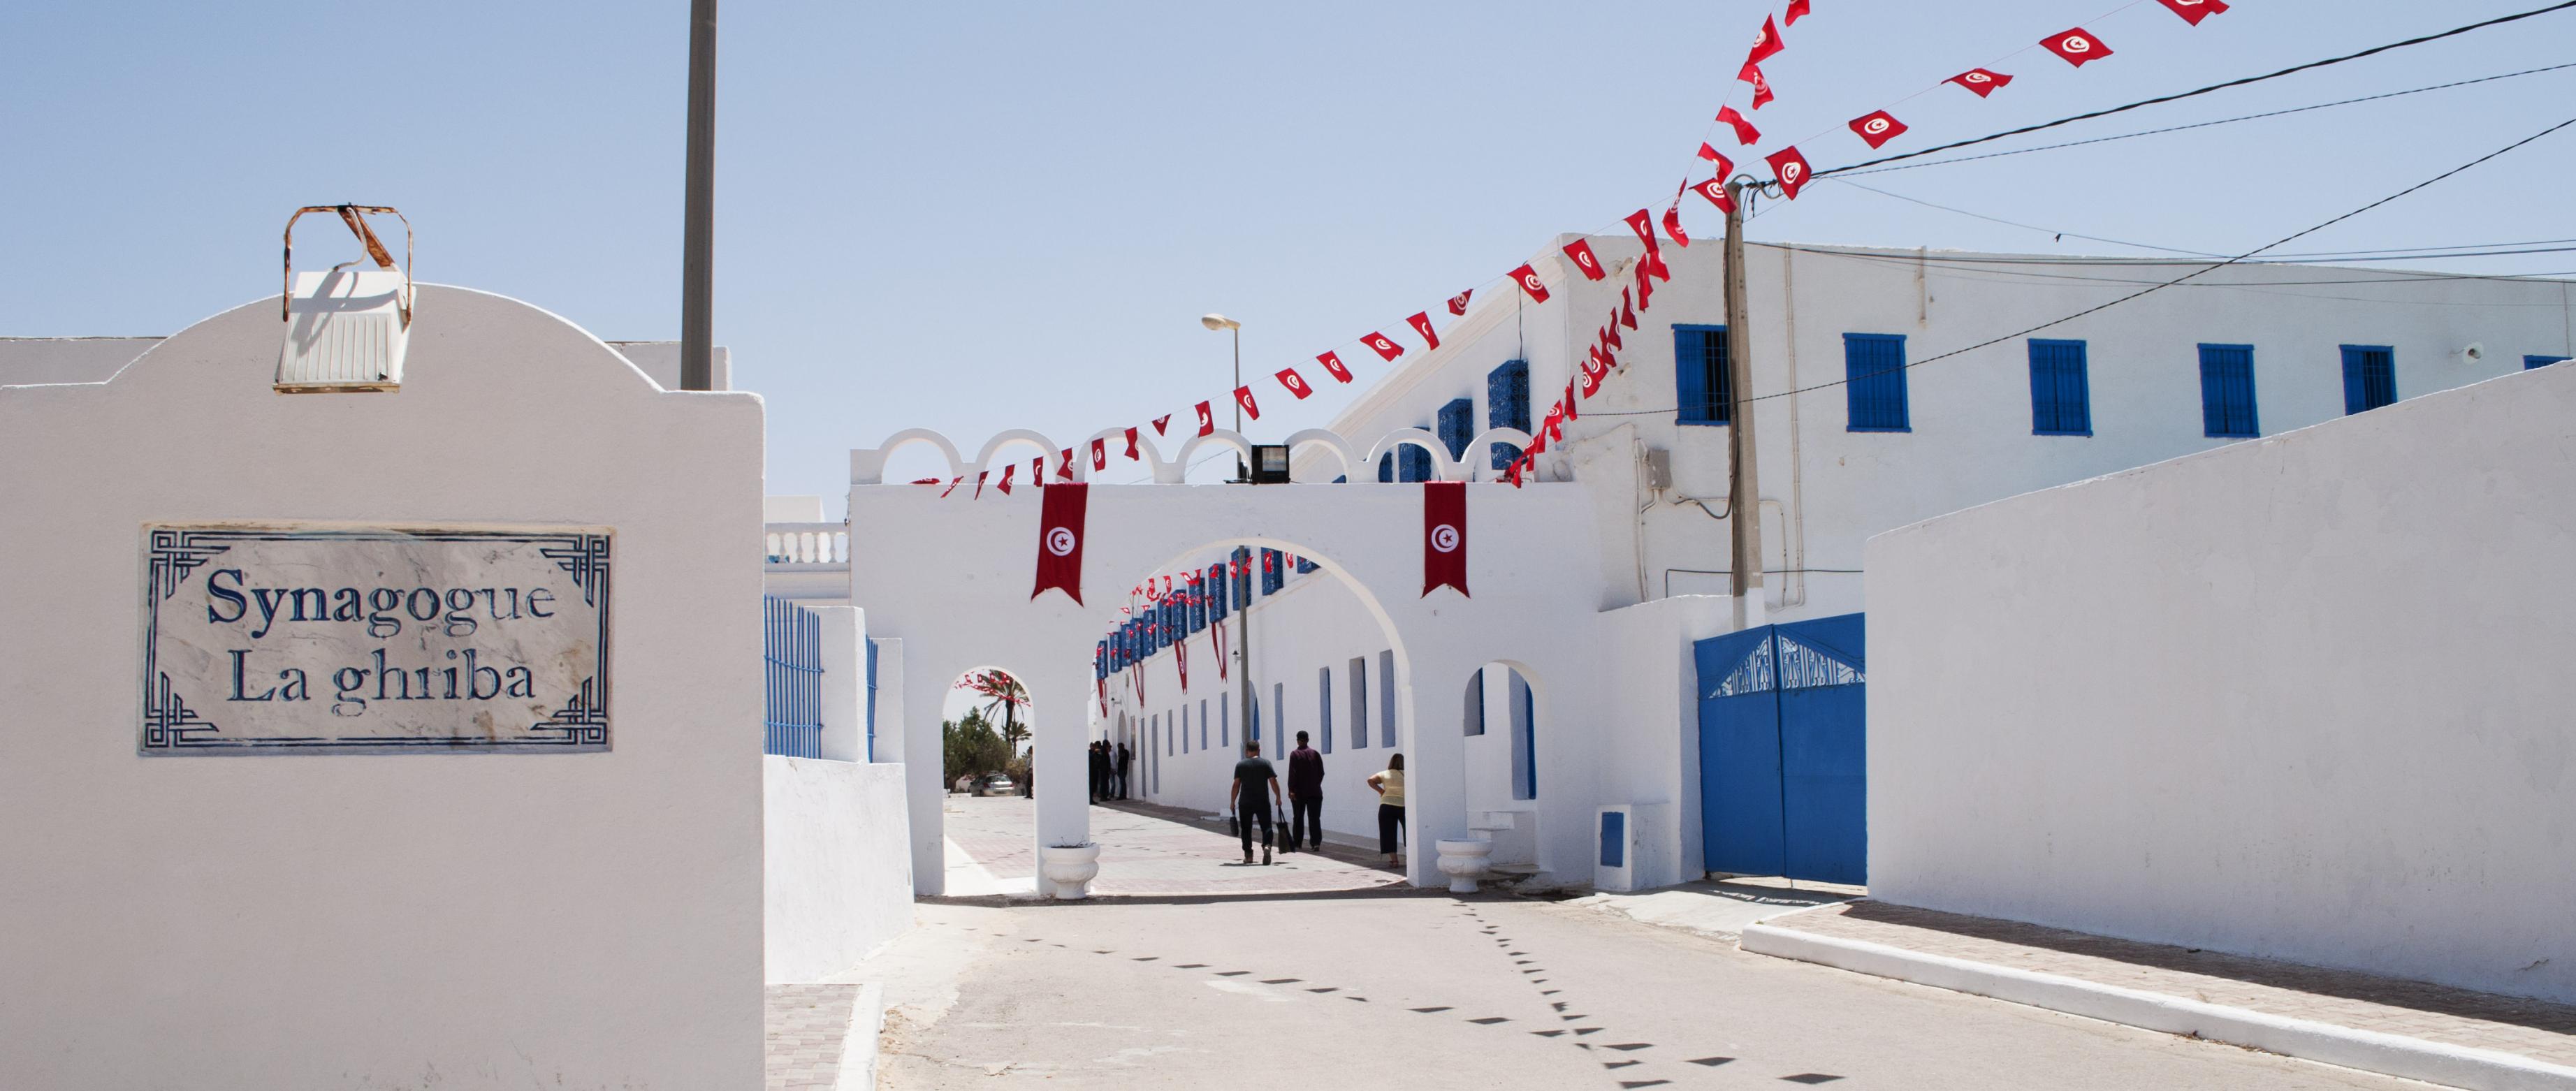 Einfahrt und Torbogen der Synagoge. Die Wände sind weiß getüncht, die Fenster blau vergittert, an den Dächern hängen tunesische Fahnen